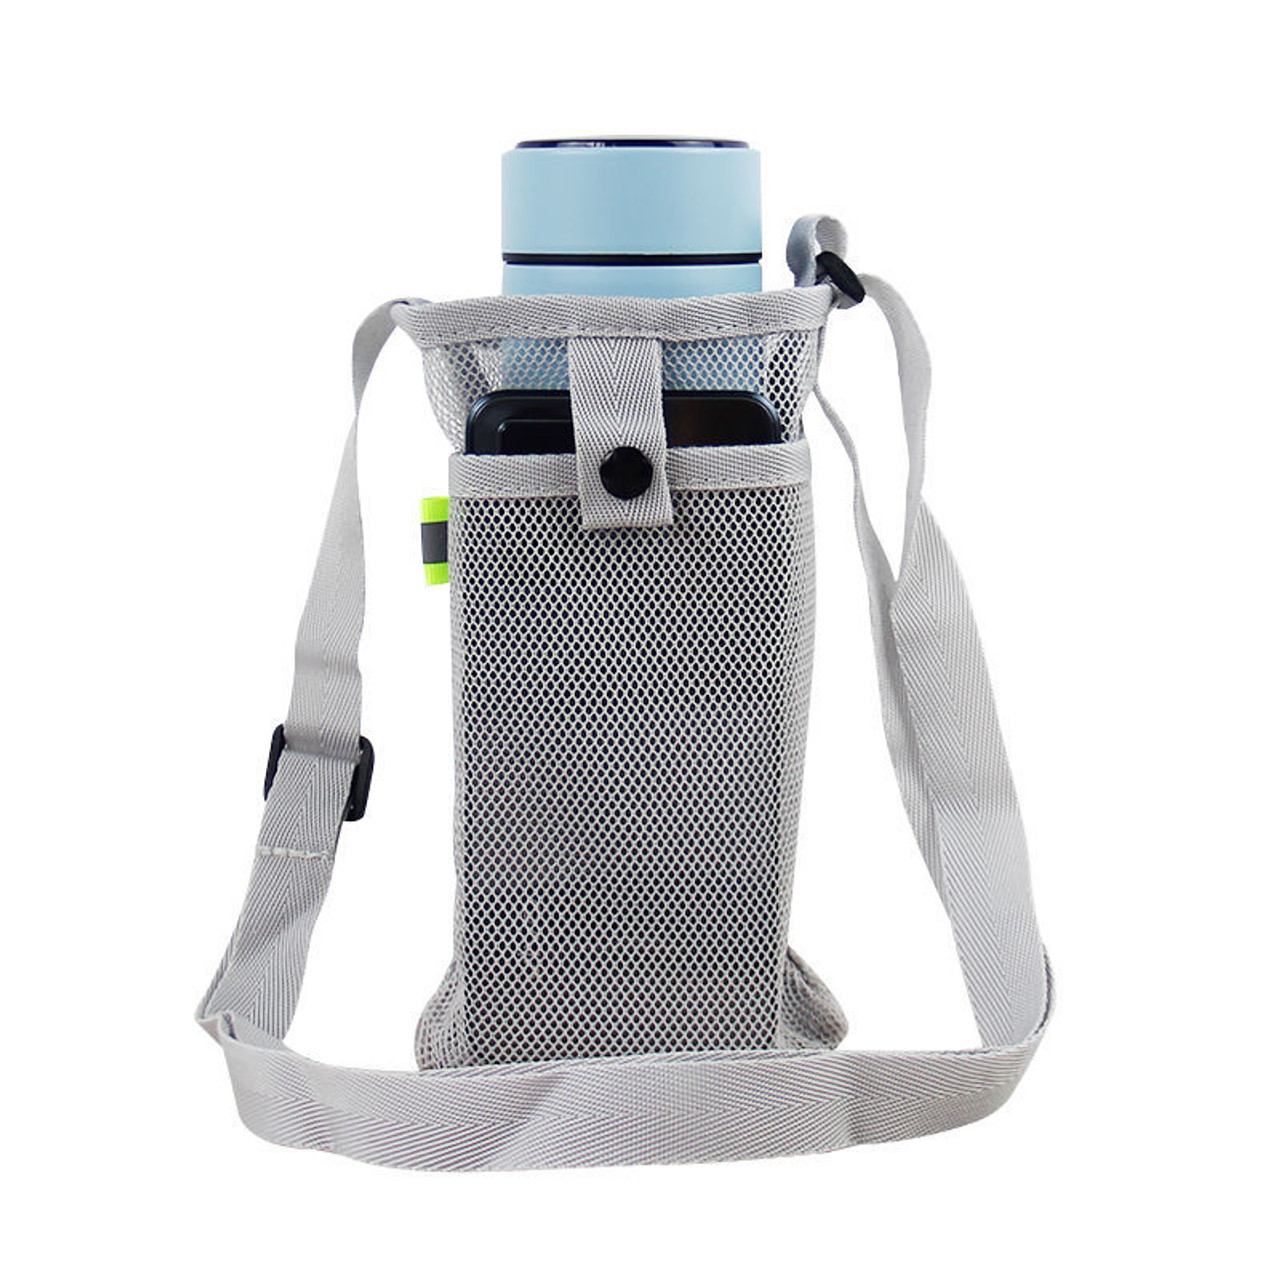 Water Bottle Tumbler Case Holder Bag with Adjustable Strap (2-Pack) product image